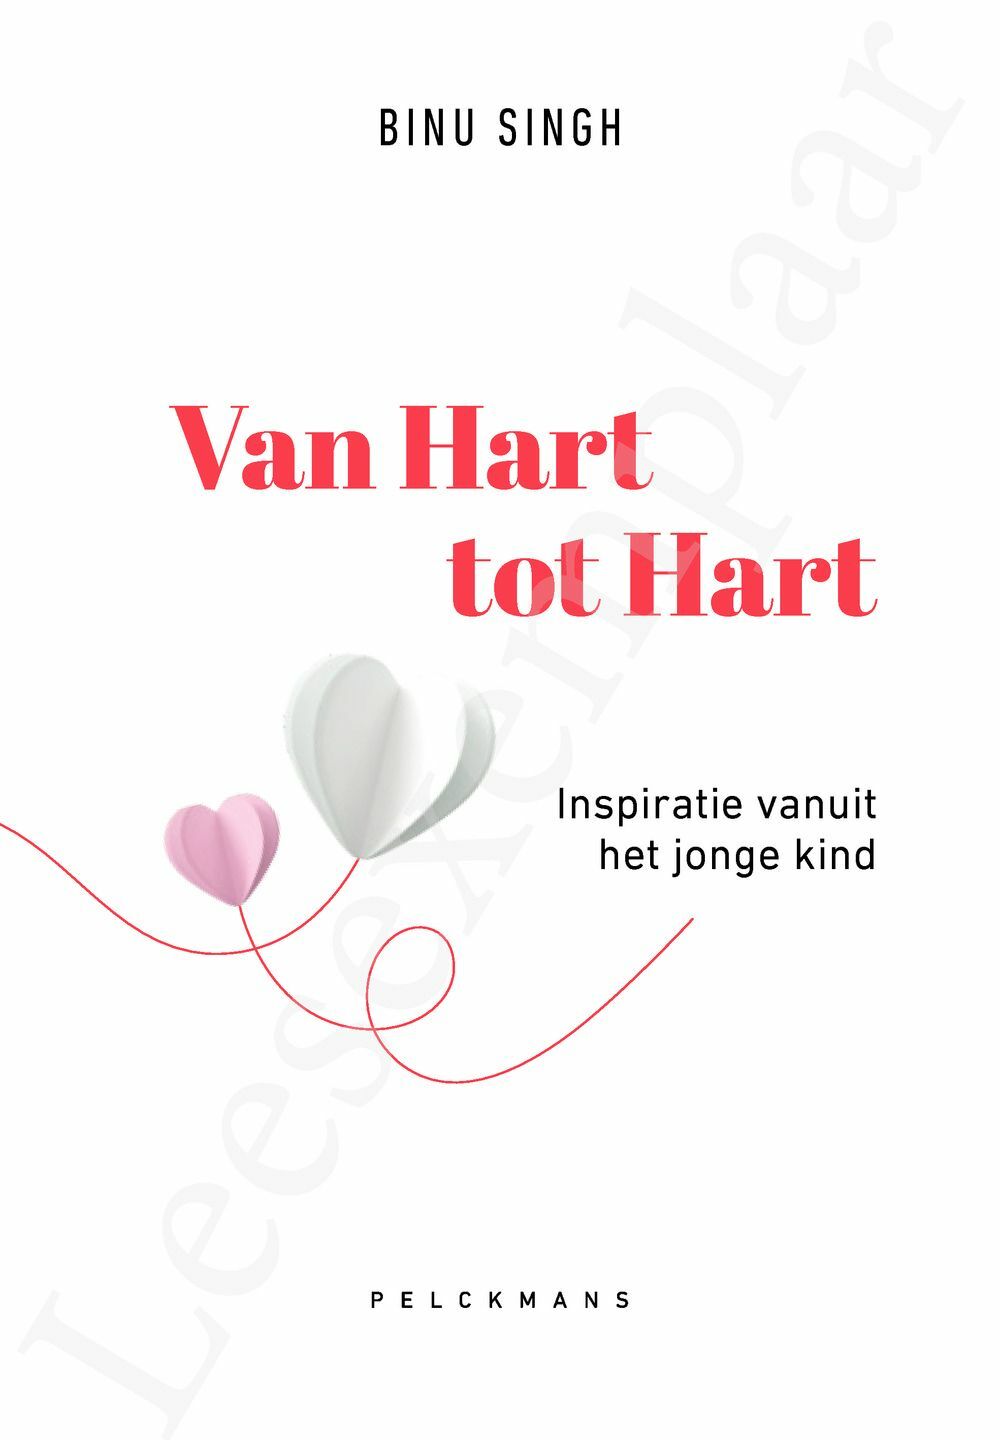 Preview: Van Hart tot Hart. Inspiratie vanuit het jonge kind